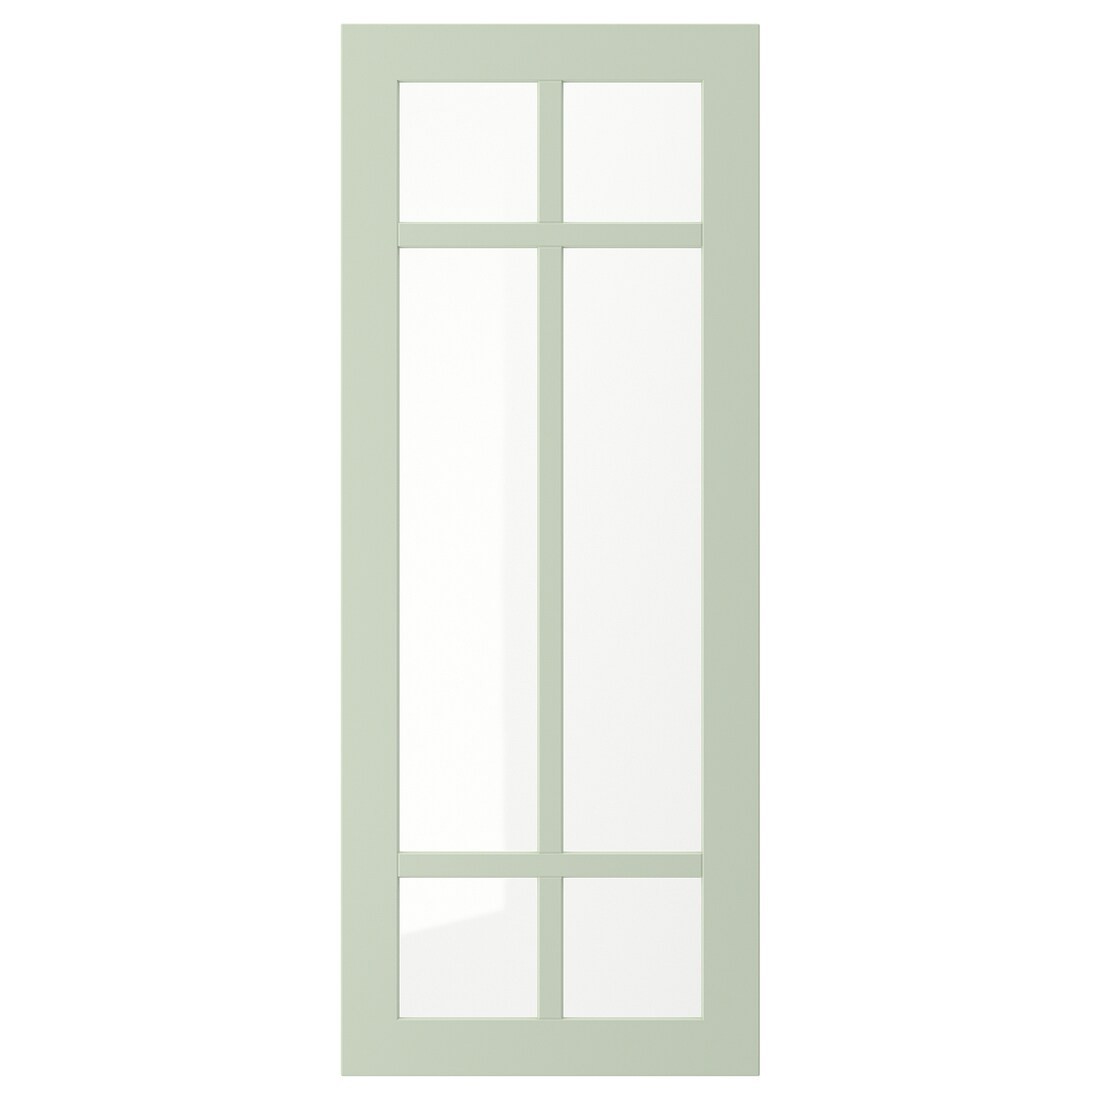 STENSUND СТЕНСУНД Скляні двері, світло-зелений, 40x100 см